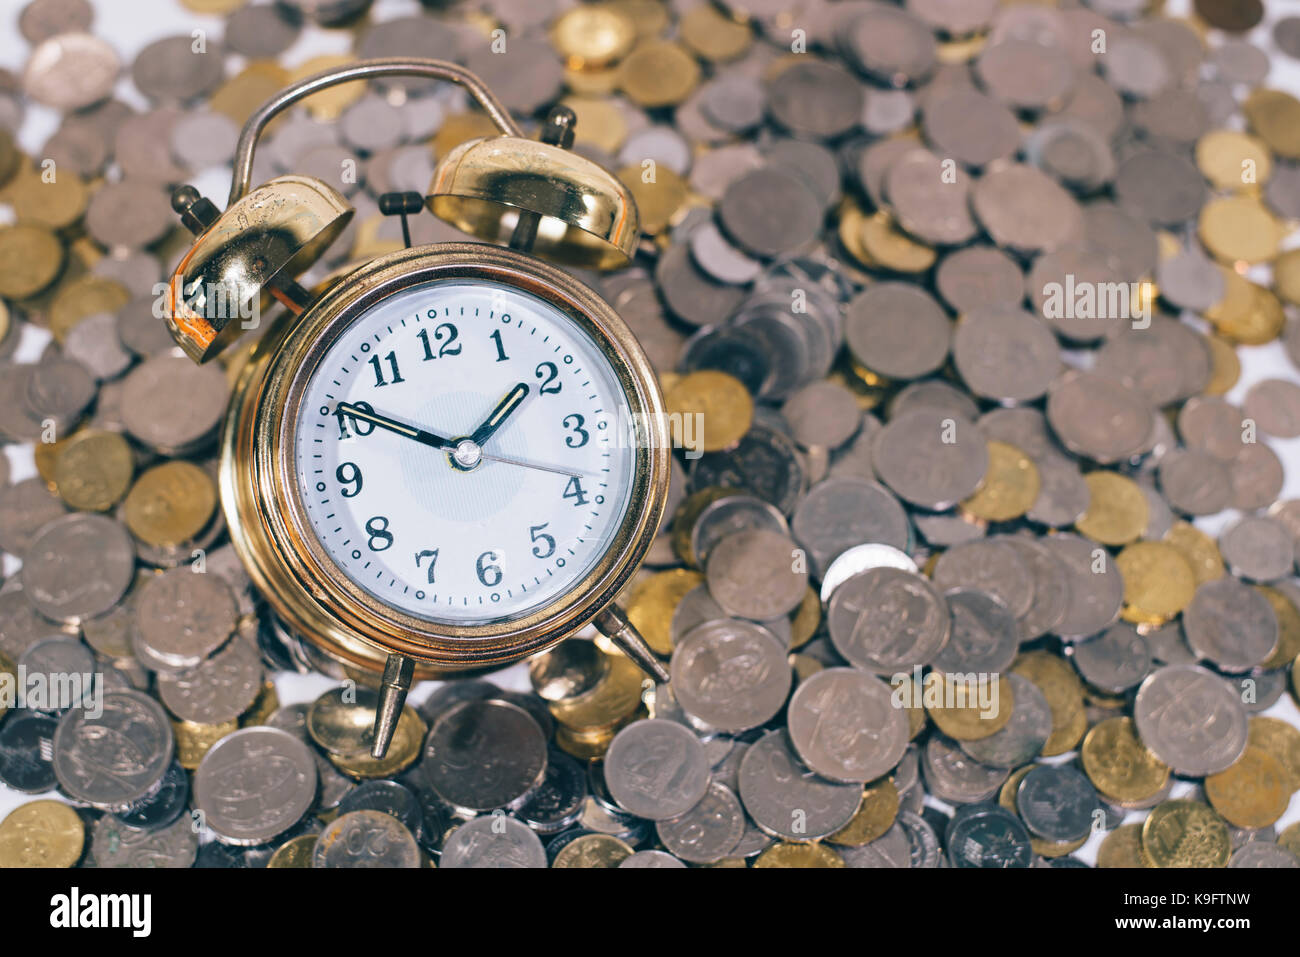 Golden Bell Uhr auf eine Gruppe von Münzen. Zeit ist Gold/geld-Konzept.  Malaysia Währung Stockfotografie - Alamy